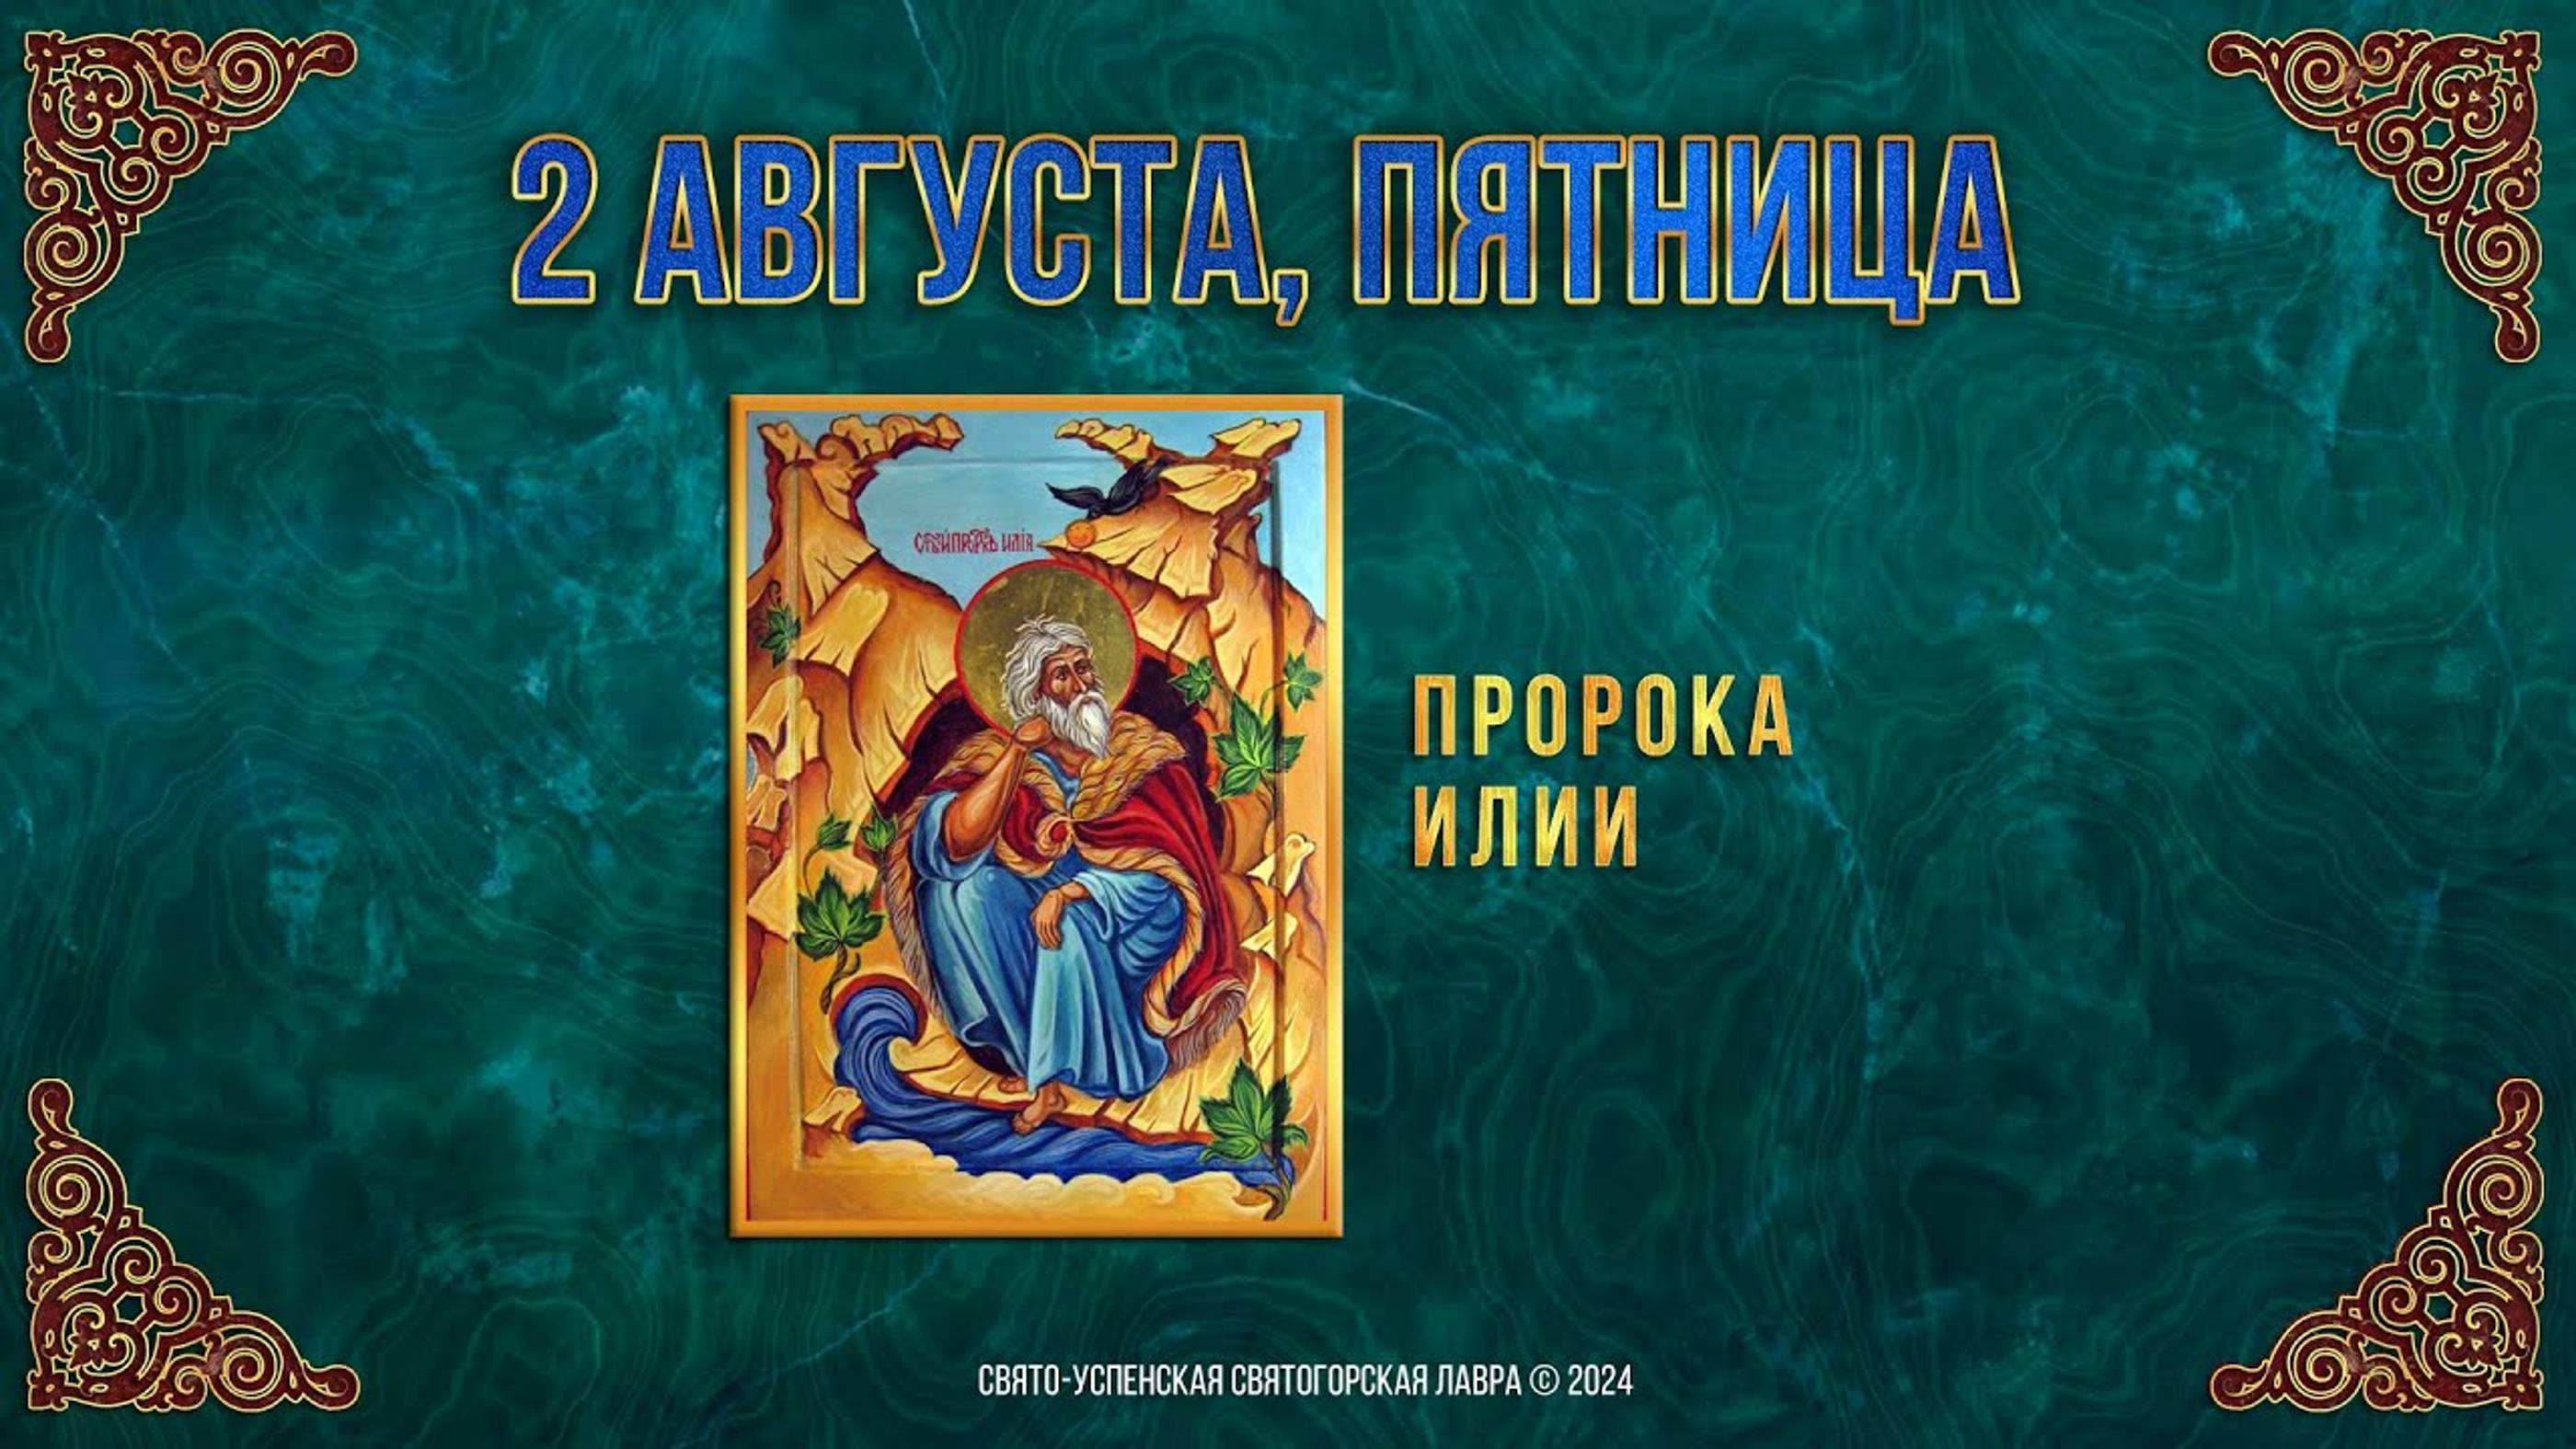 Пророка Илии. 2 августа 2024 г. Православный мультимедийный календарь